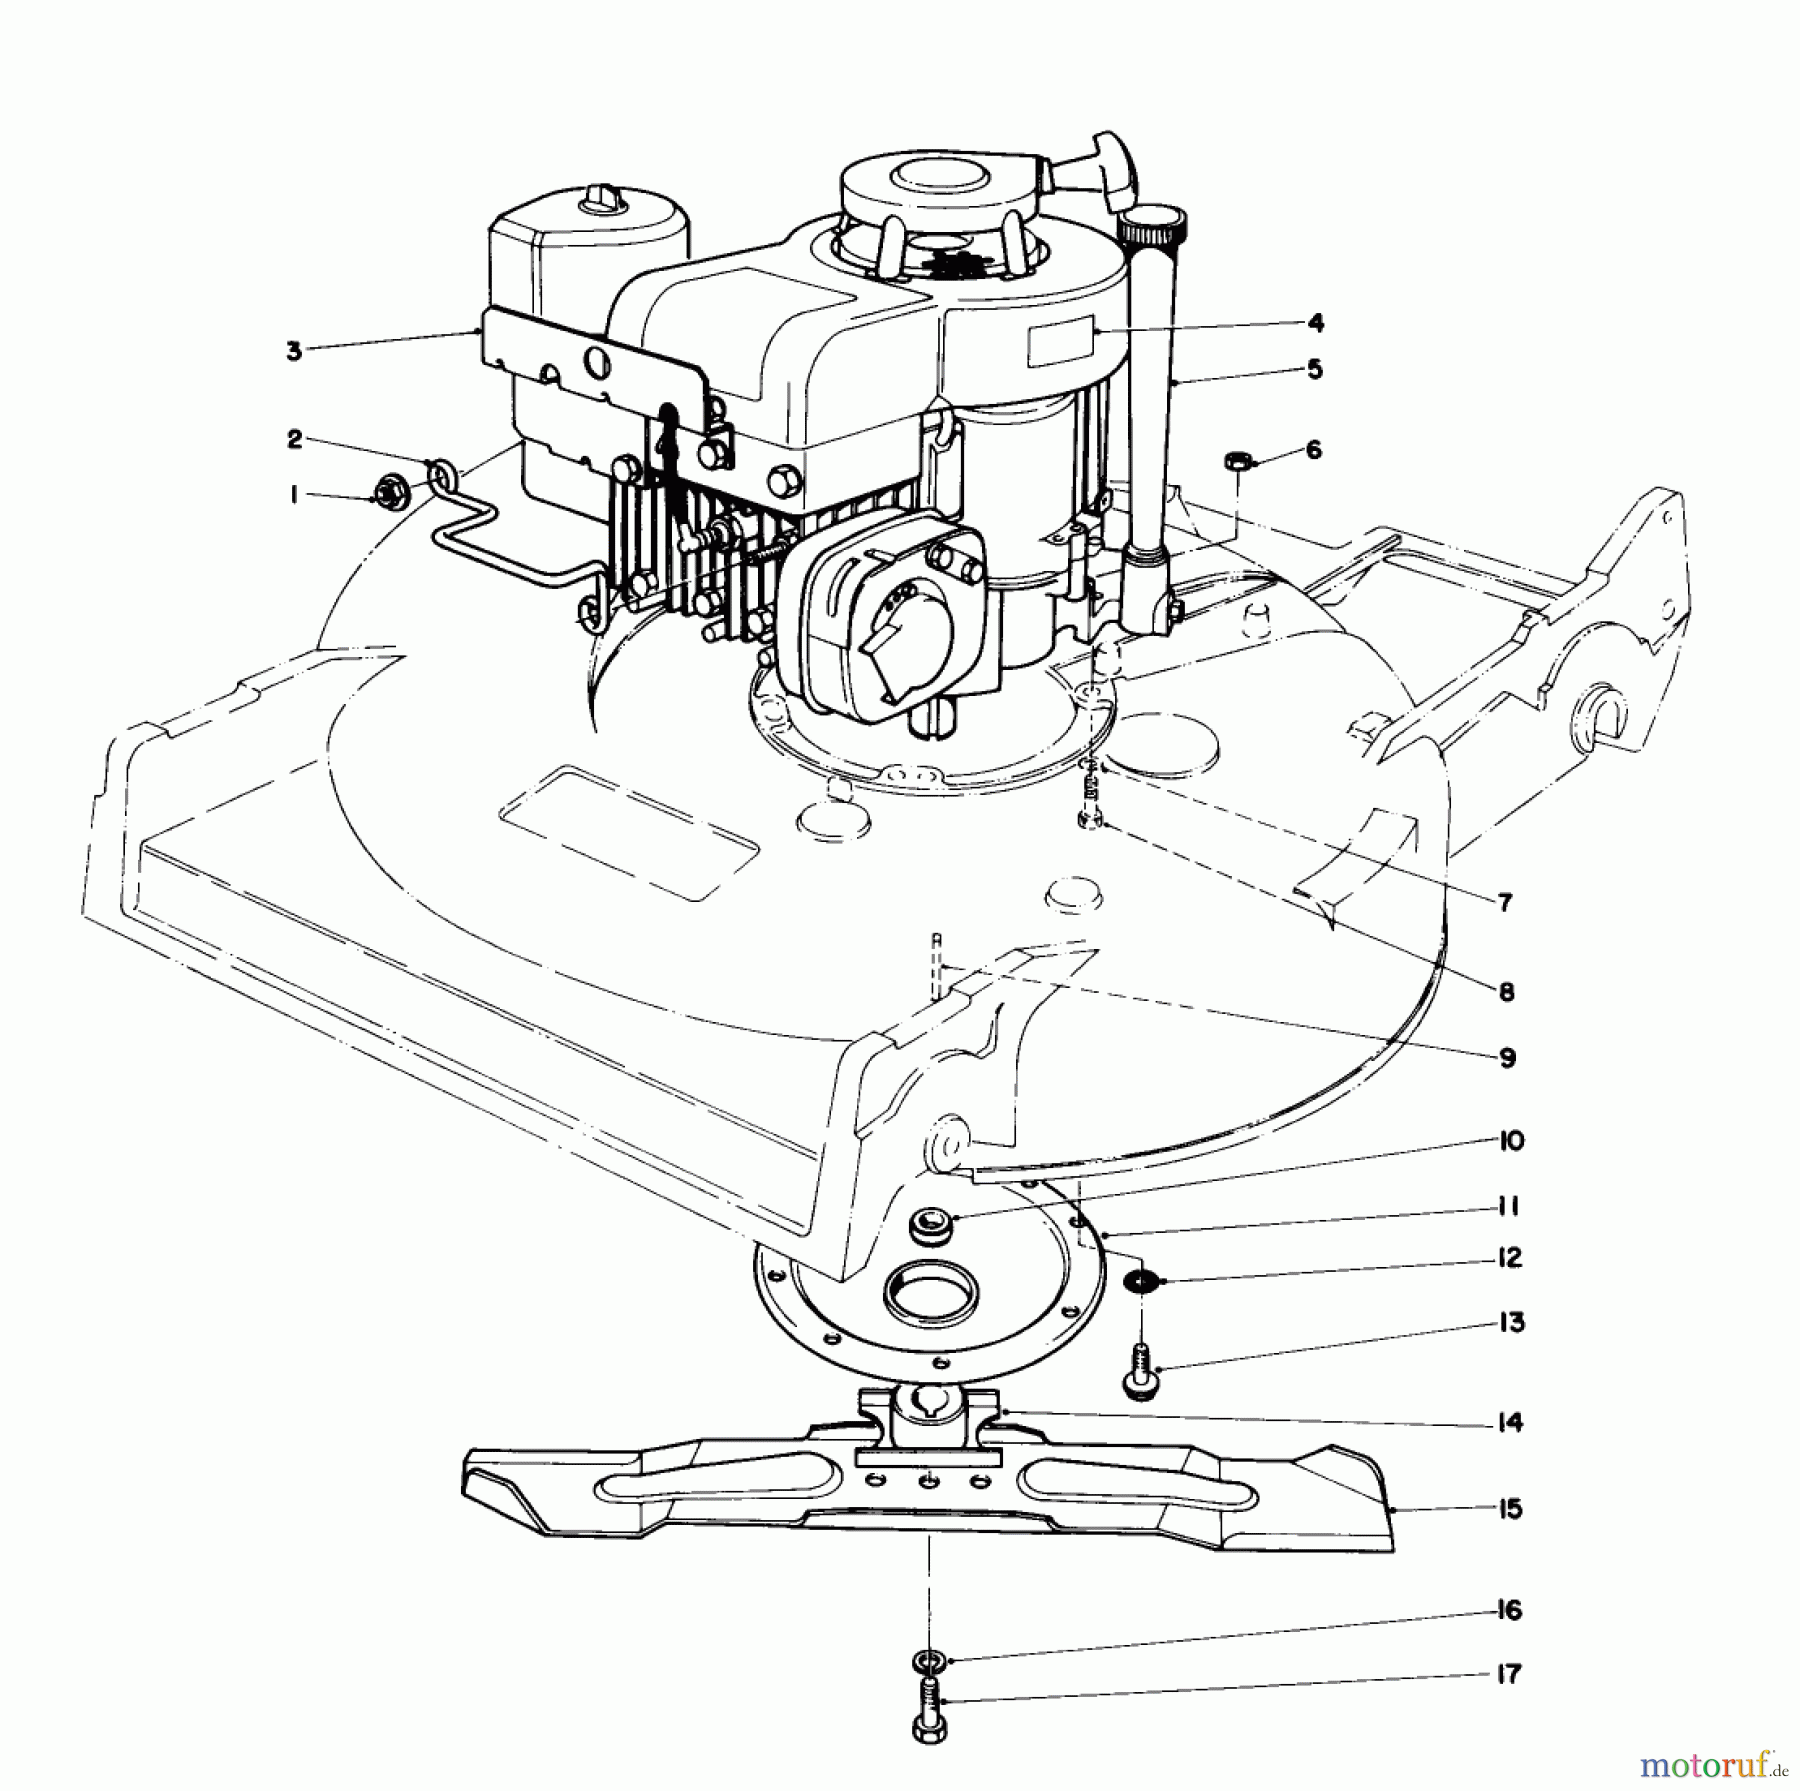  Toro Neu Mowers, Walk-Behind Seite 2 22020 - Toro Lawnmower, 1986 (6000001-6999999) ENGINE ASSEMBLY (MODEL 22015)